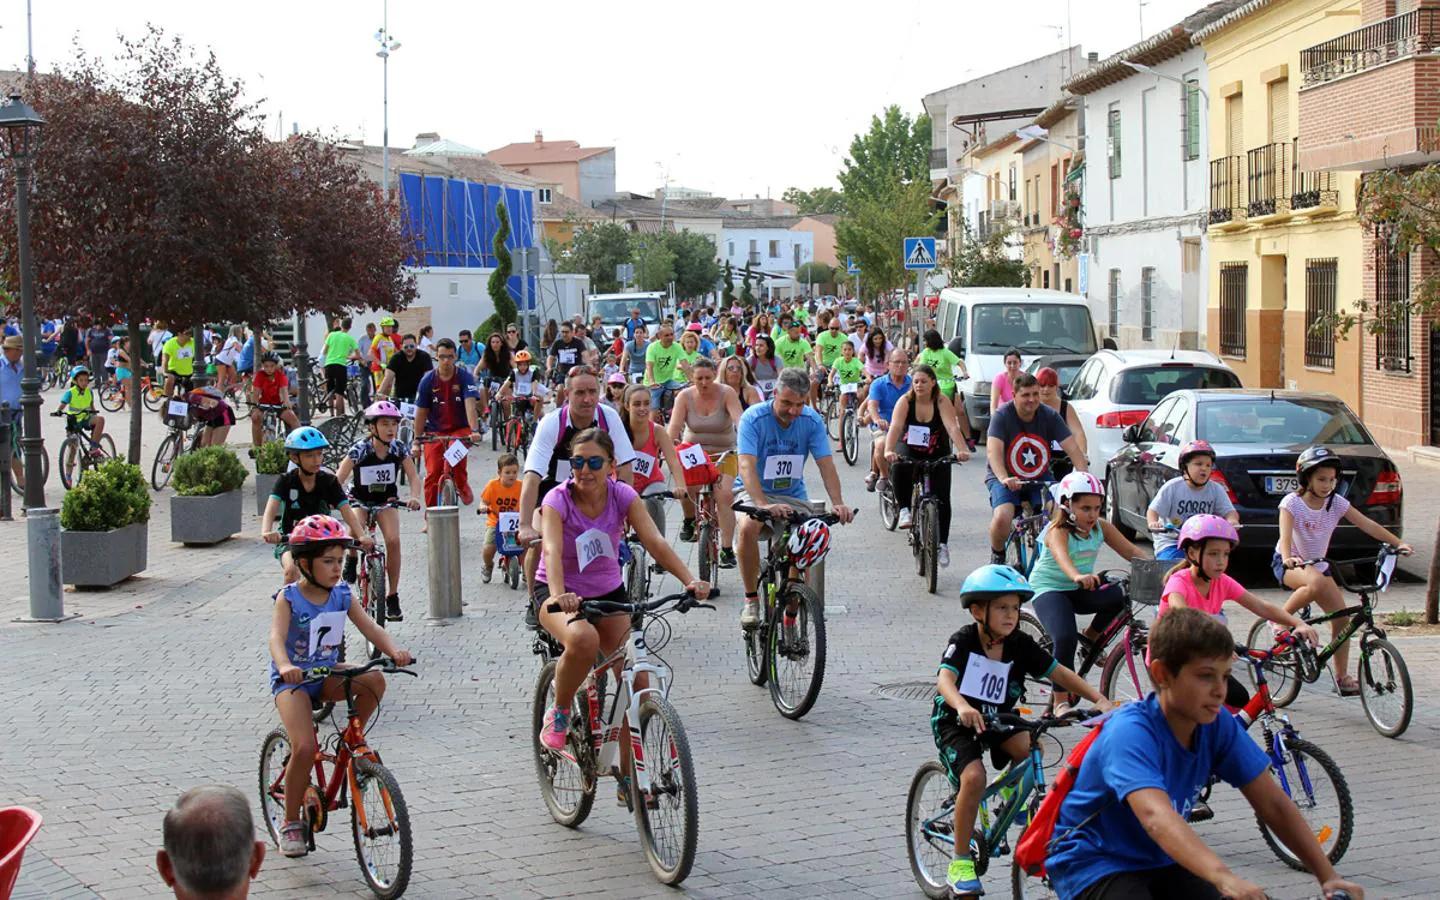 Día de la Bicicleta en Villafranca de los Caballeros